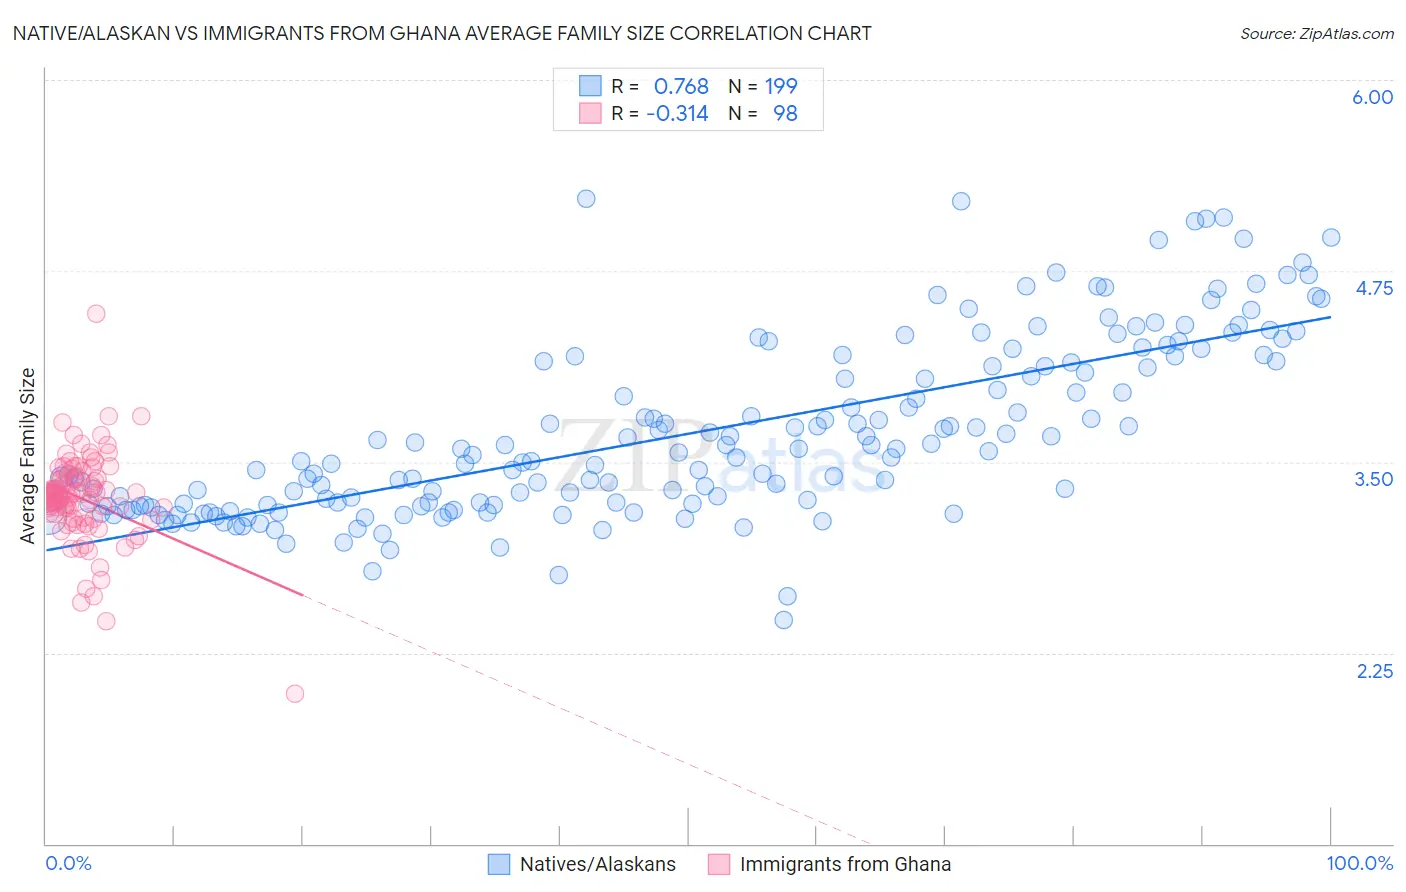 Native/Alaskan vs Immigrants from Ghana Average Family Size